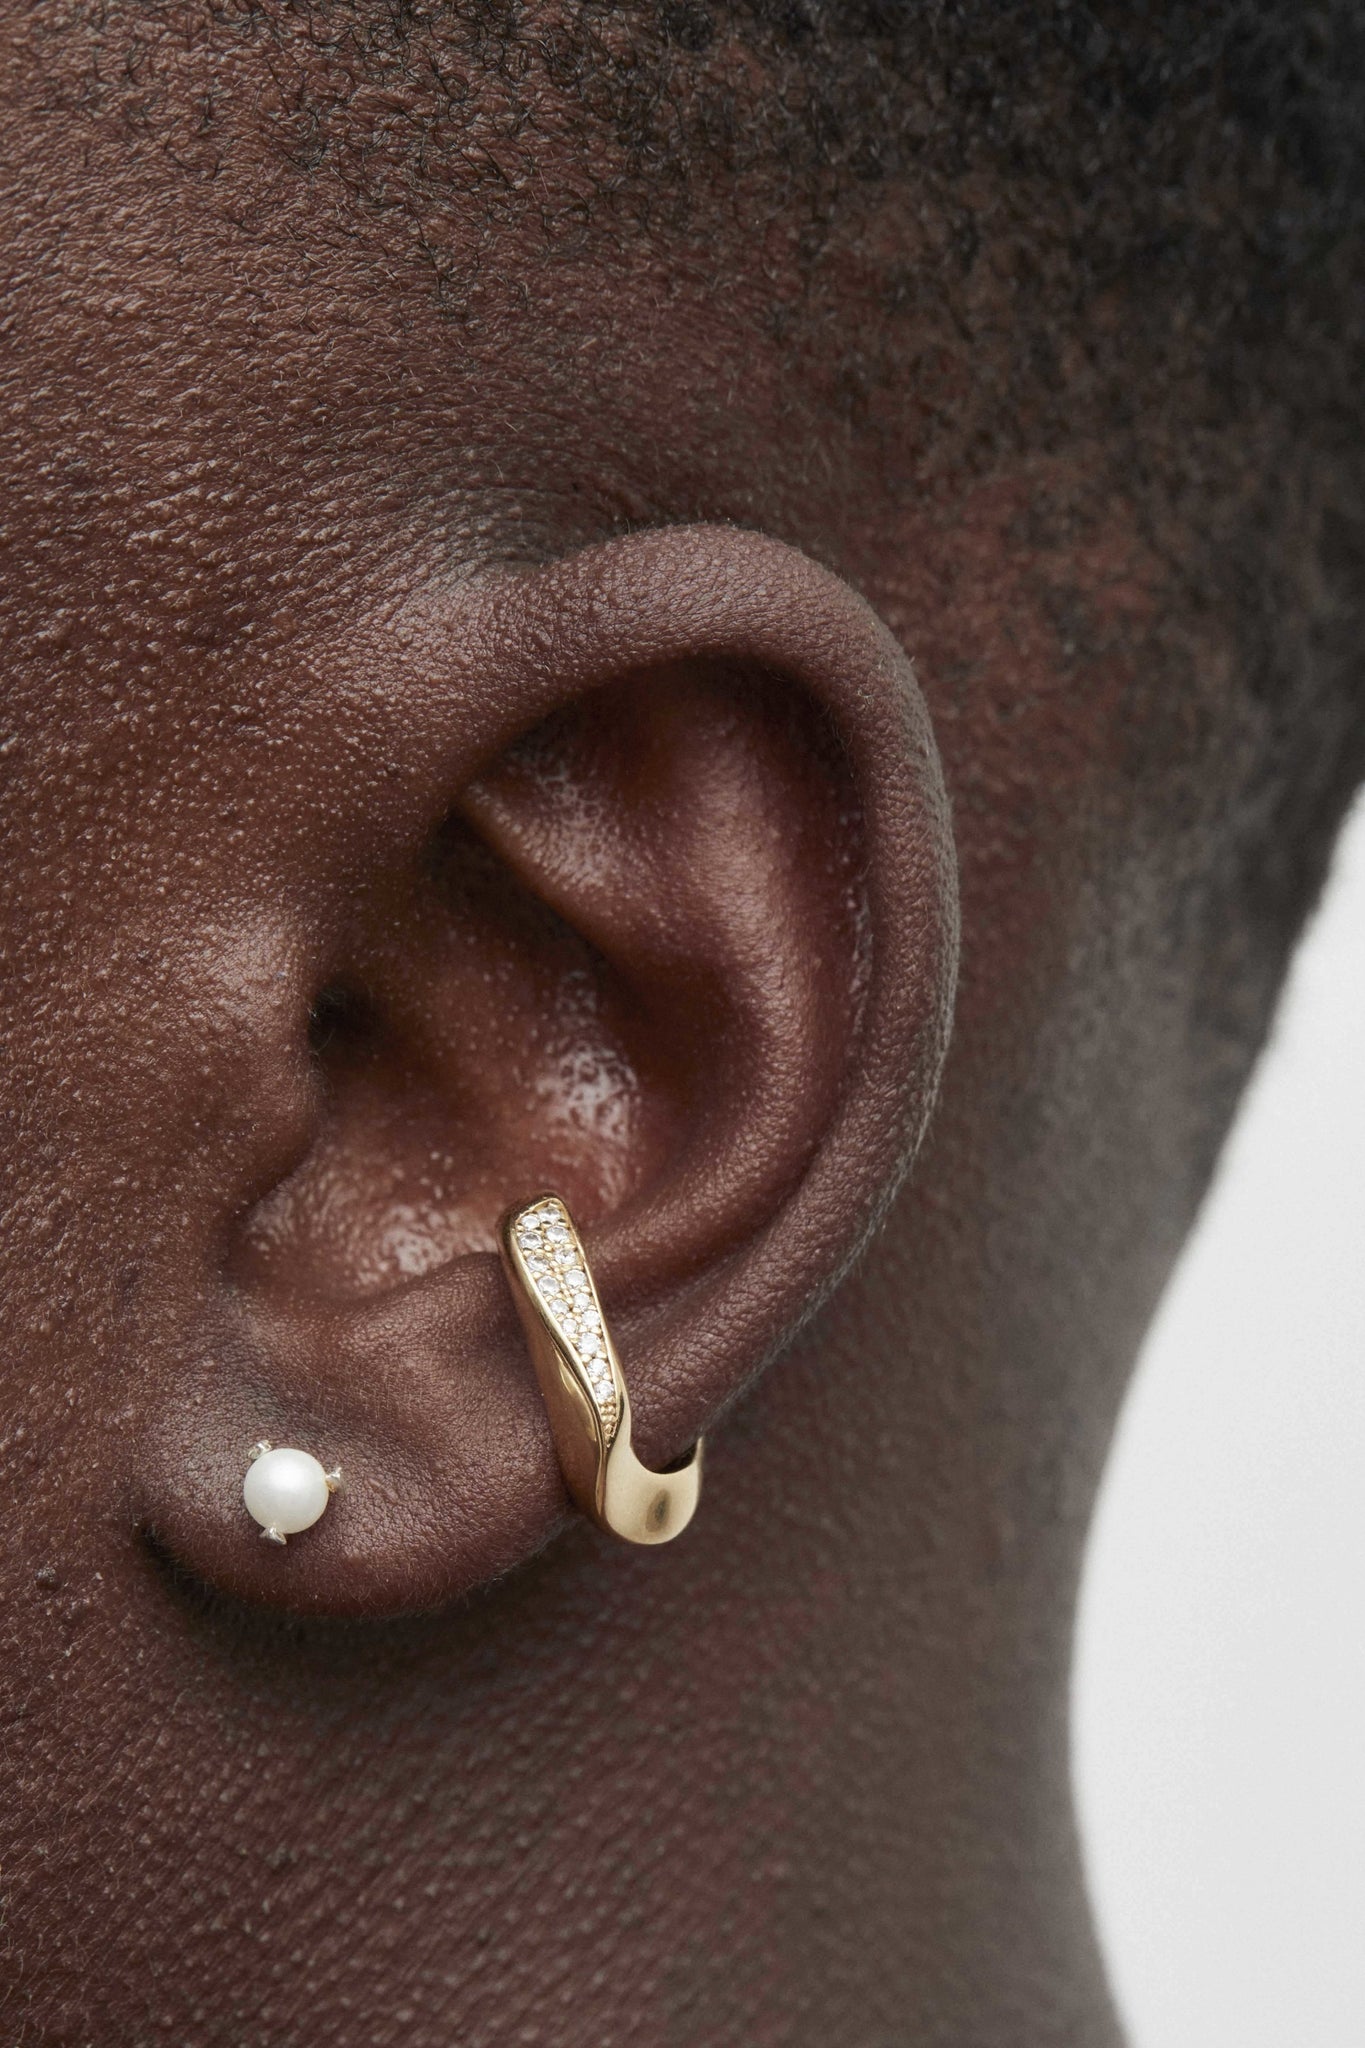 Folded Ear Cuff Midi Encrusted - Earrings - Cornelia Webb - 2